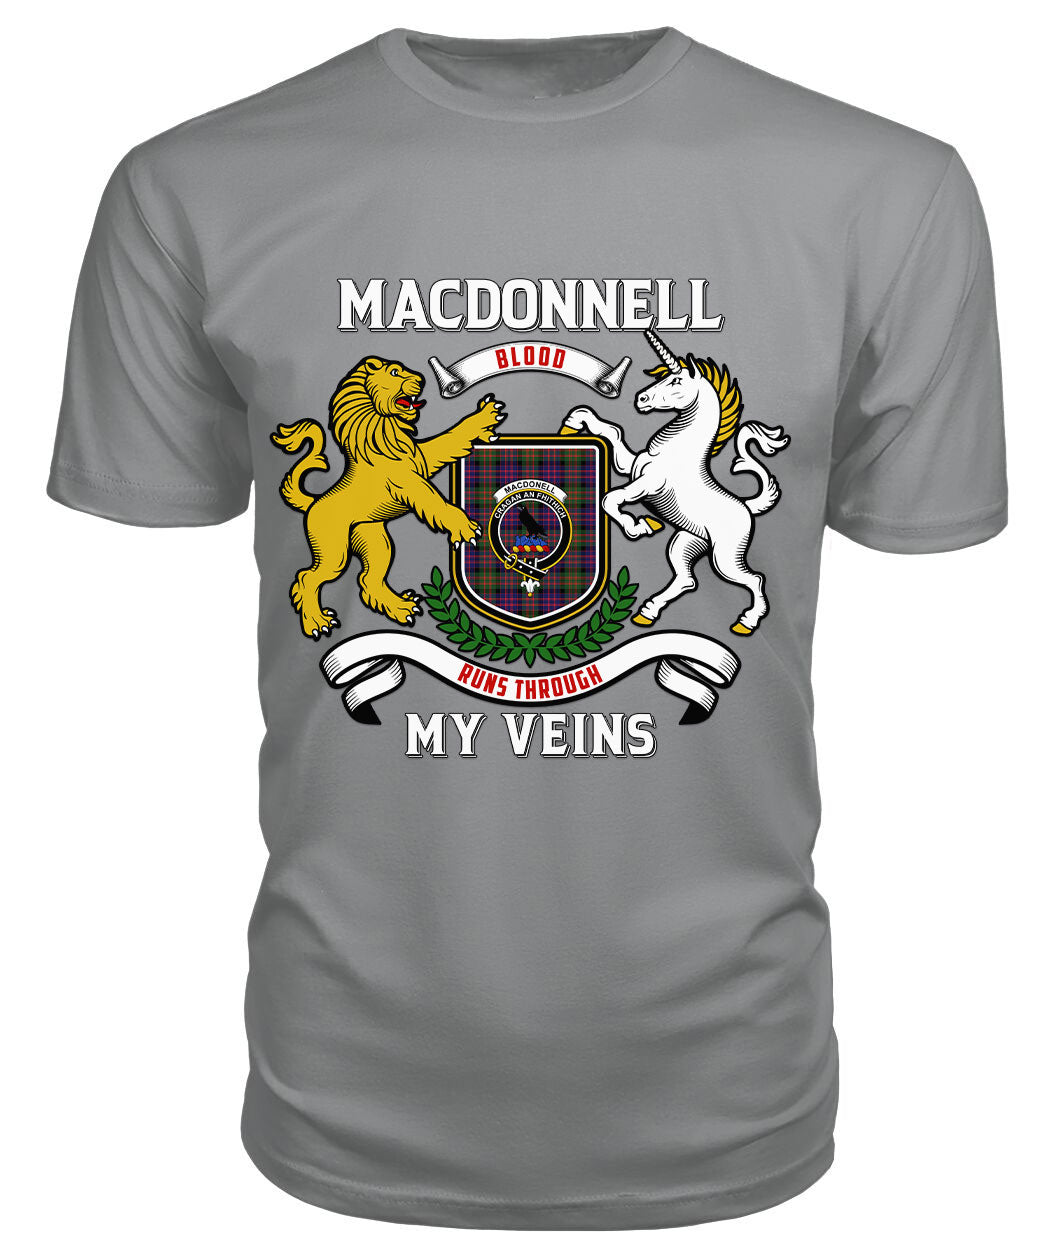 MacDonnell of Glengarry Modern Tartan Crest 2D T-shirt - Blood Runs Through My Veins Style